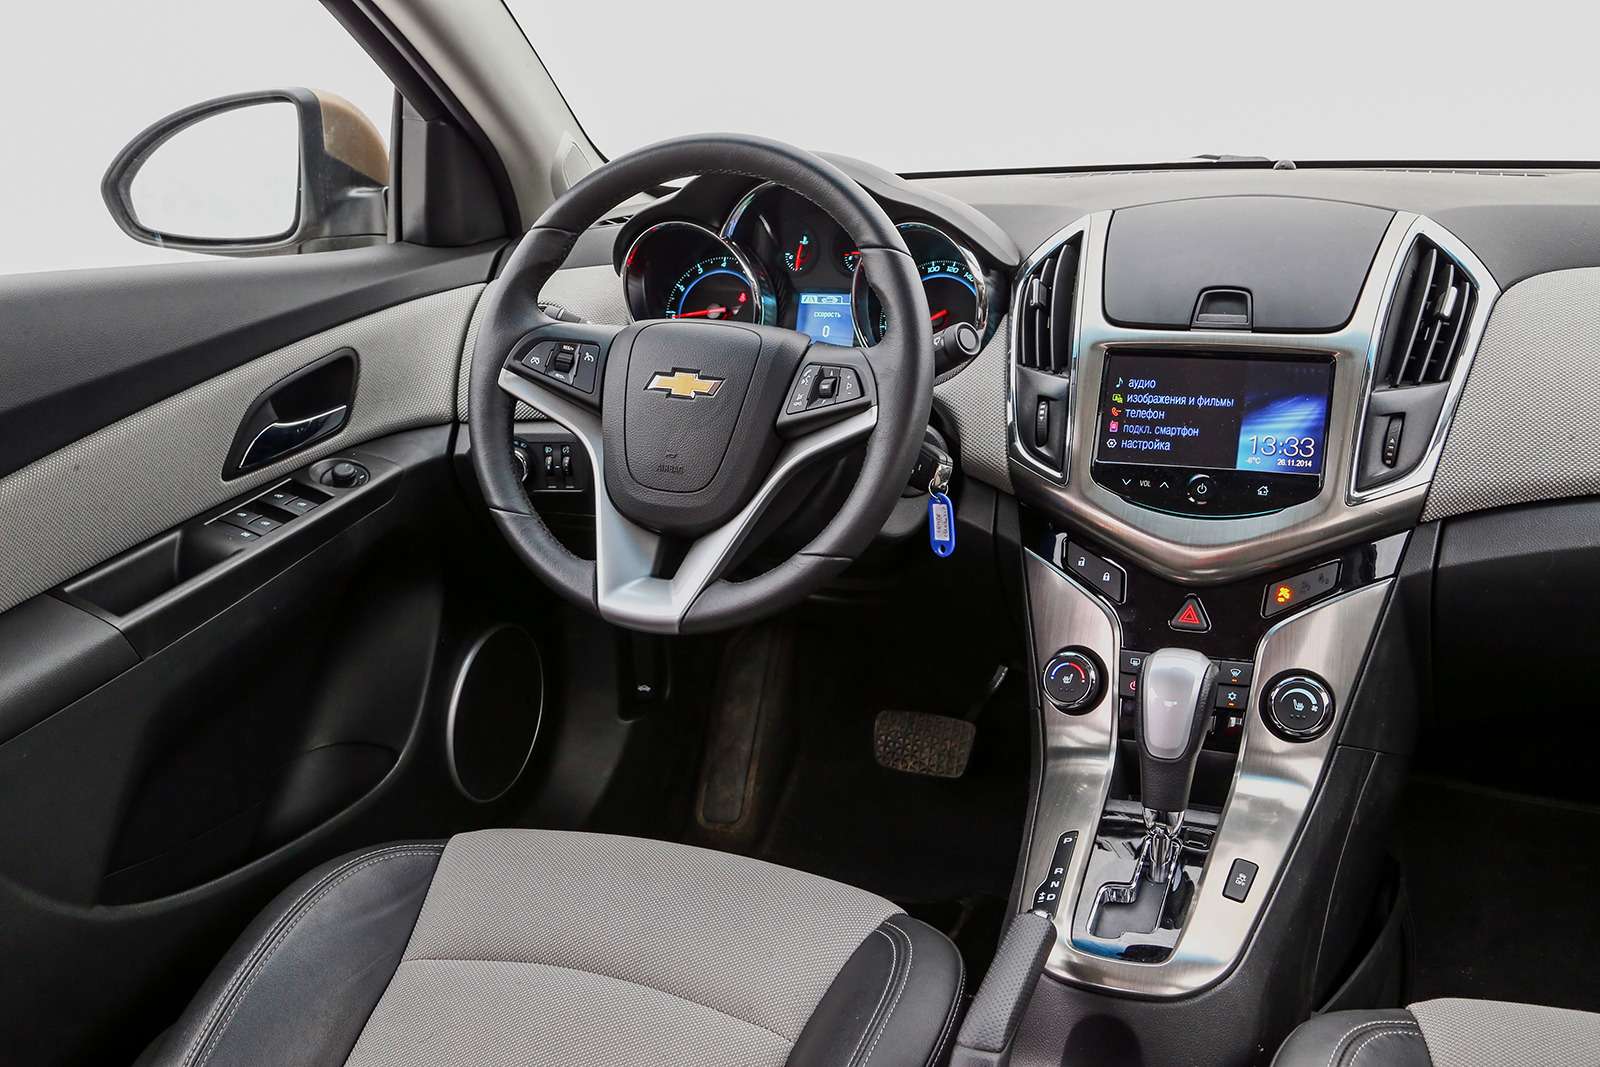 Интерьер Chevrolet узнаваем, а ткань на передней панели – и вовсе «фишка» сезона. Но прочие материалы попроще, чем у конкурентов.